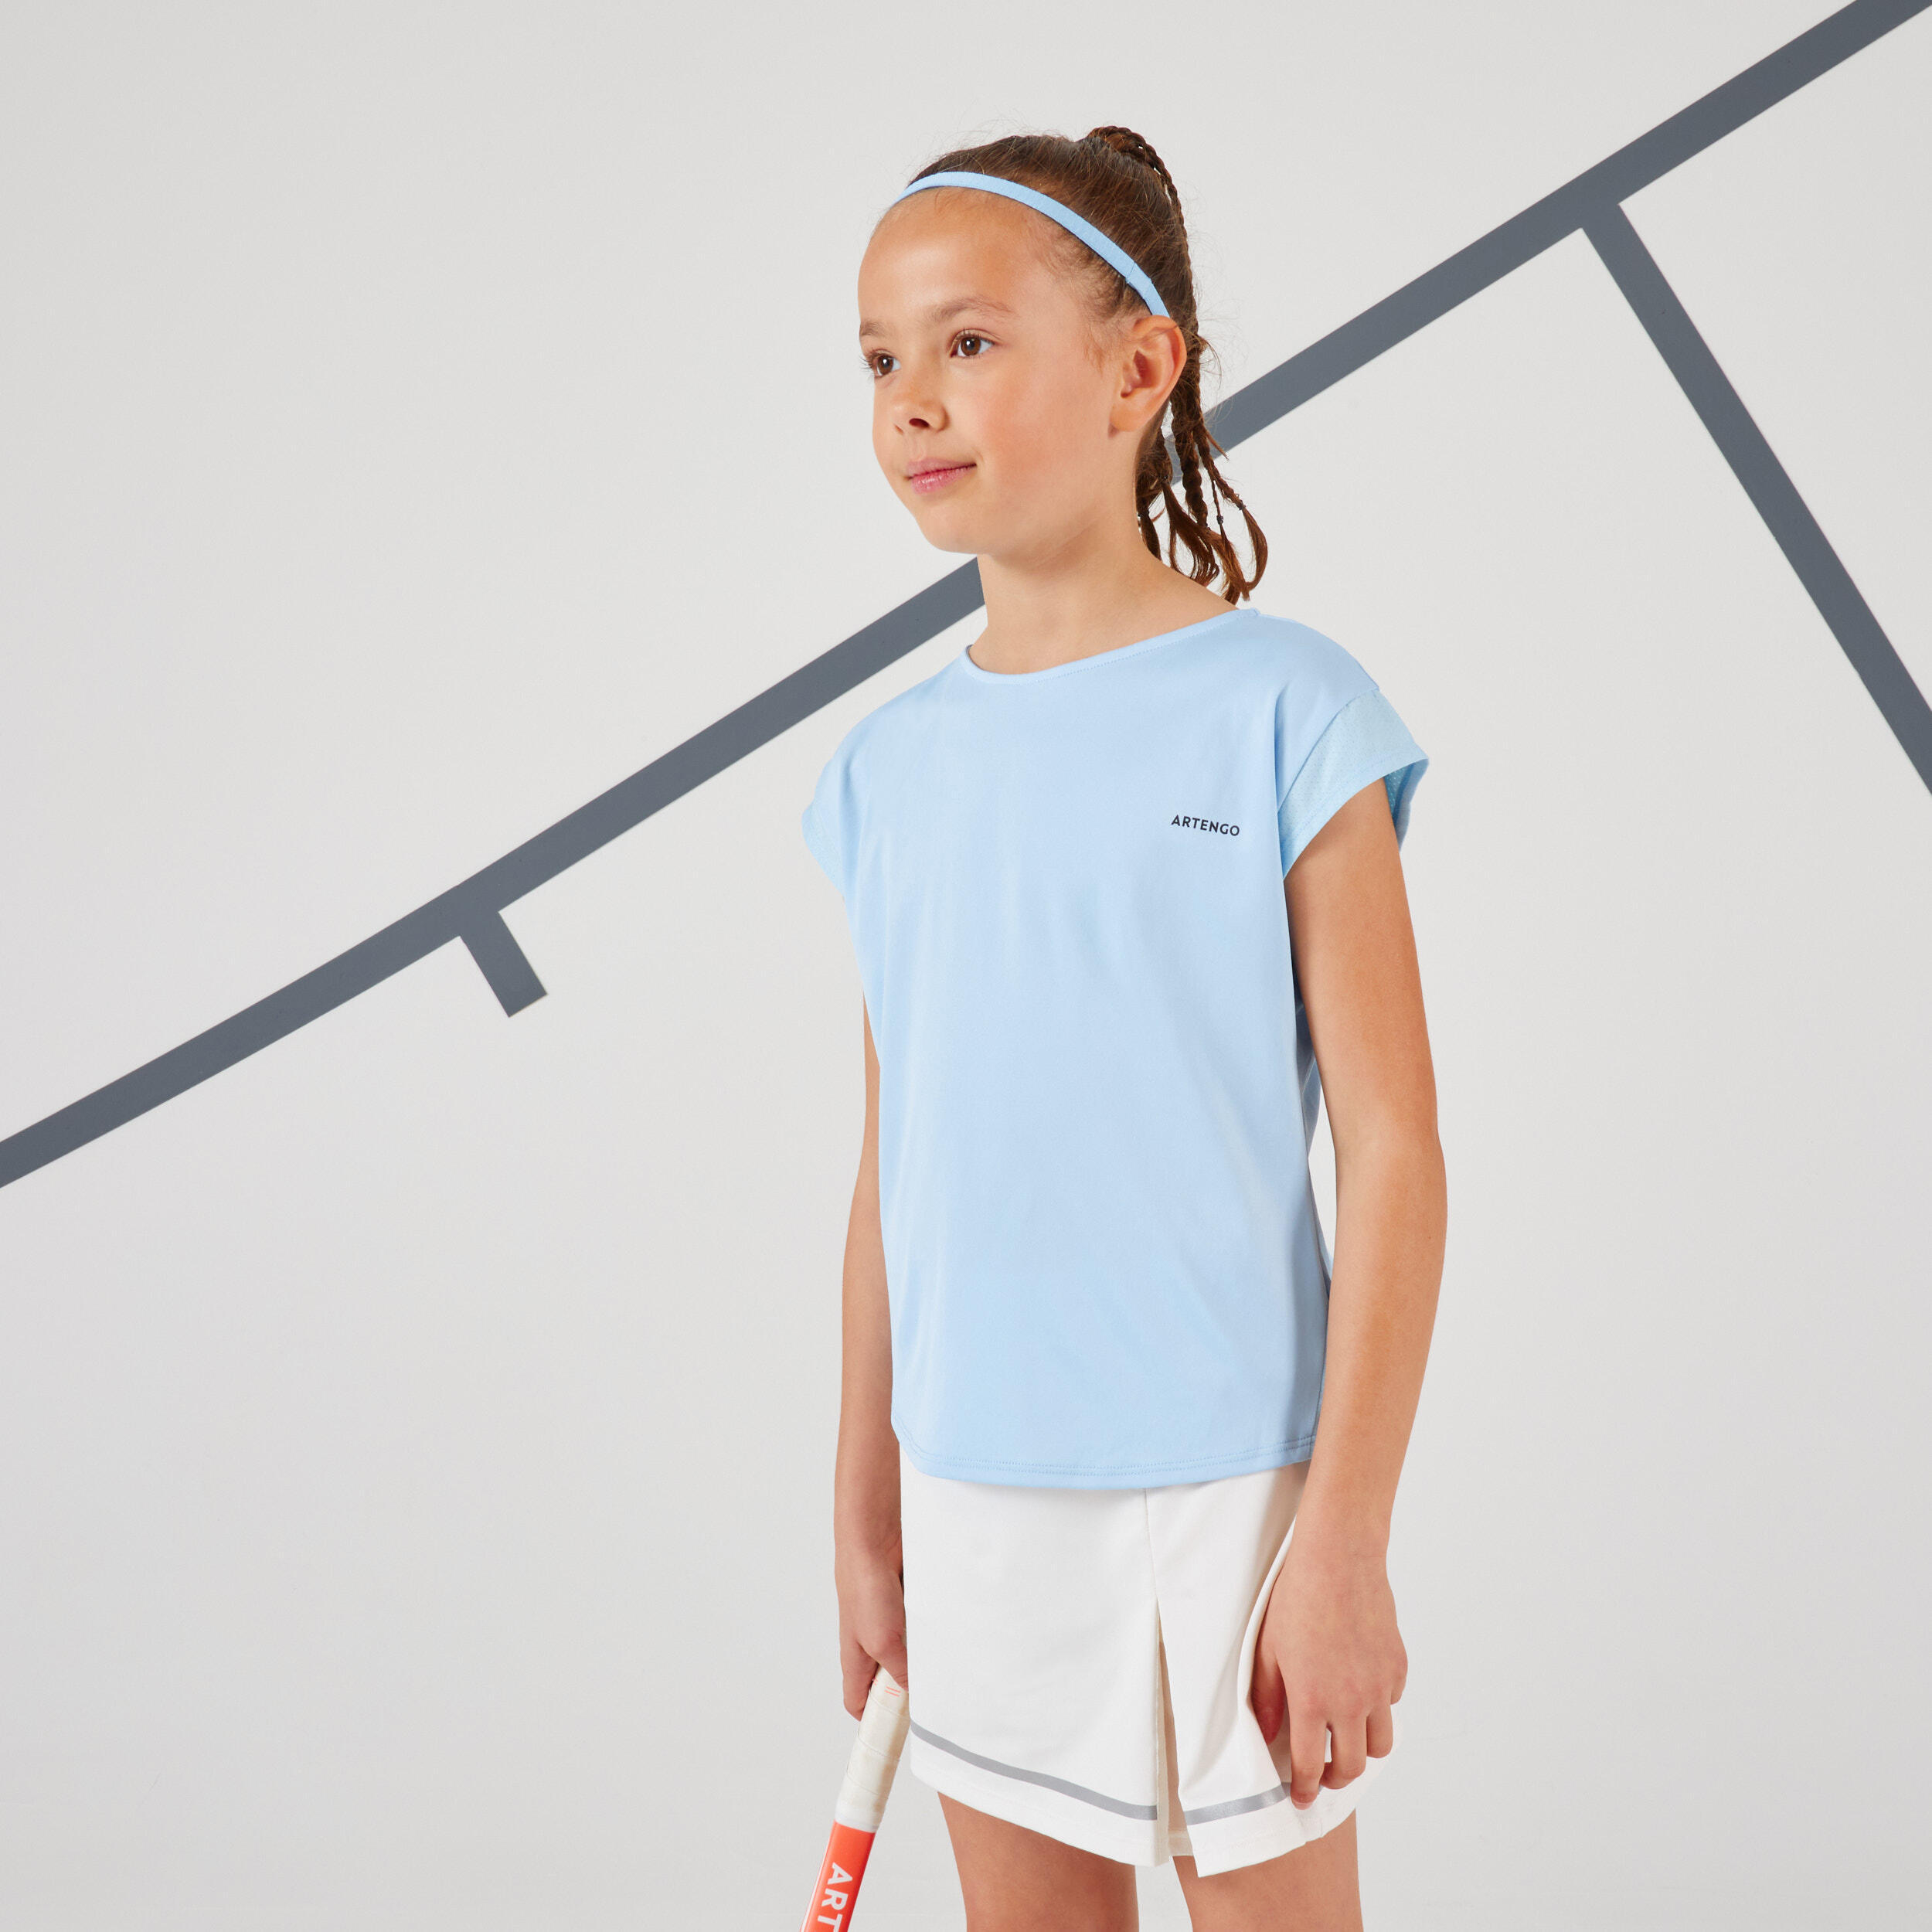 ARTENGO Girls' Tennis T-Shirt TTS500 - Blue